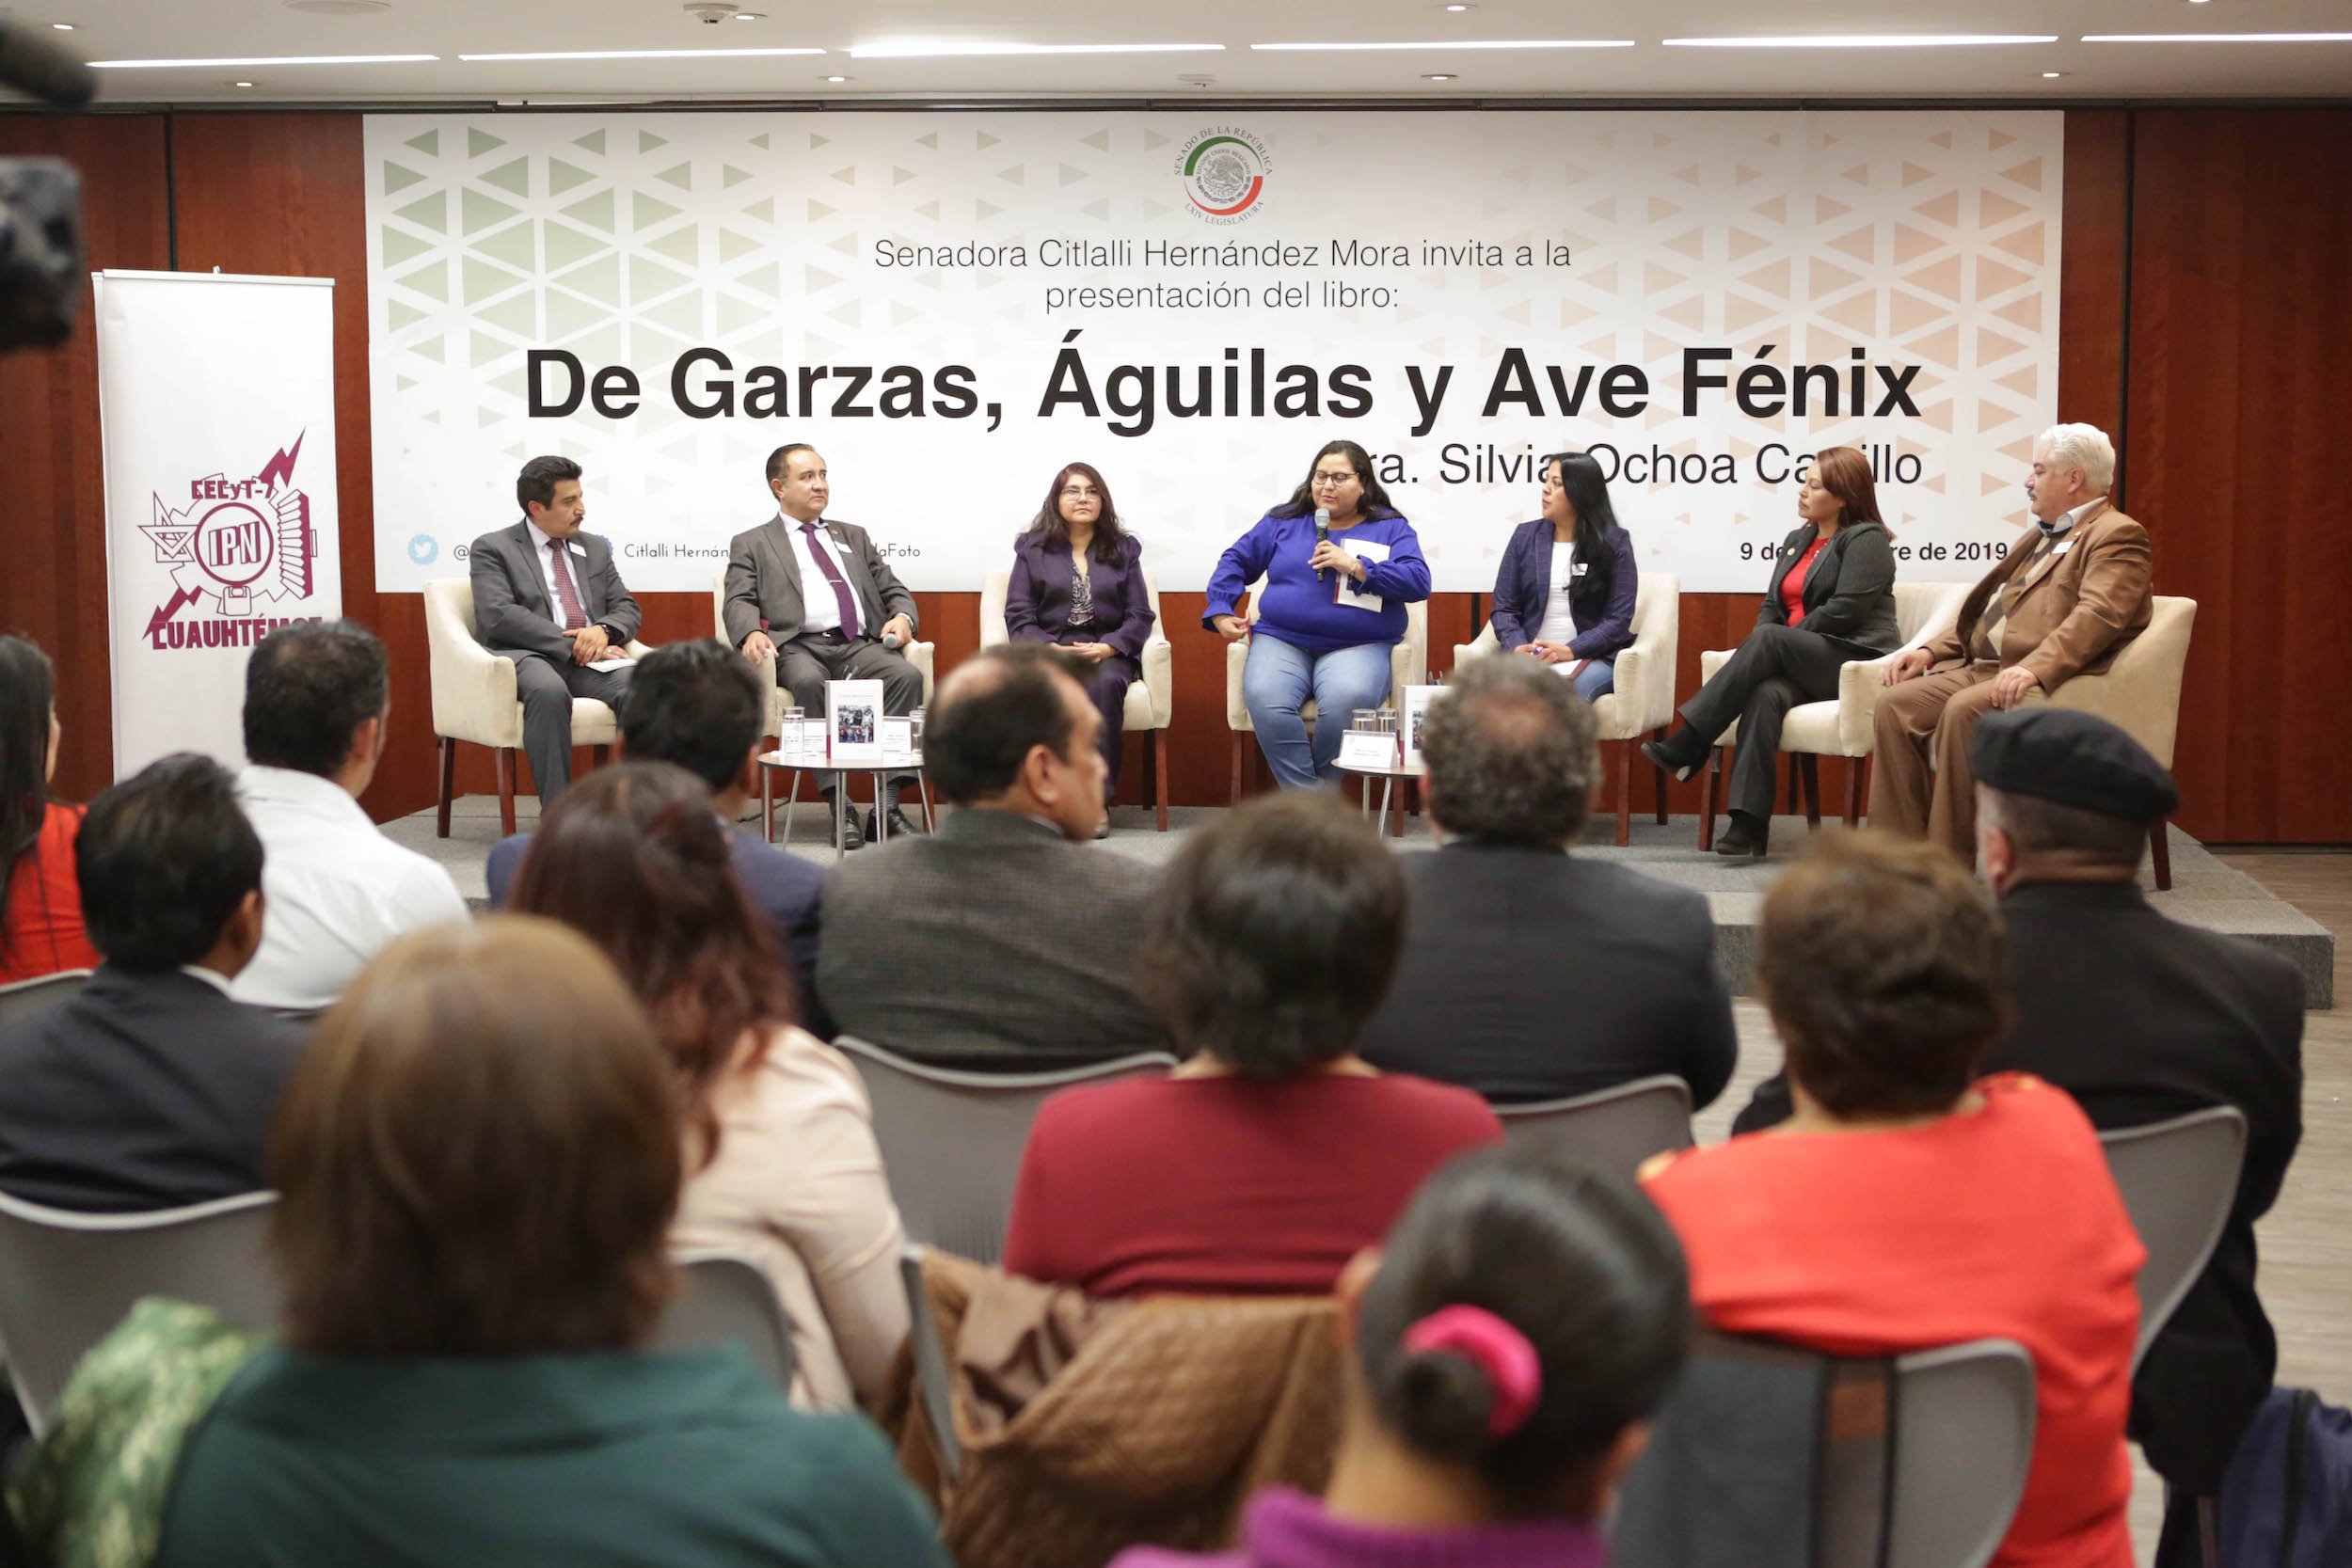 Reconocen senadores lucha social del IPN con la obra “De Garzas, Águilas y Ave Fénix”